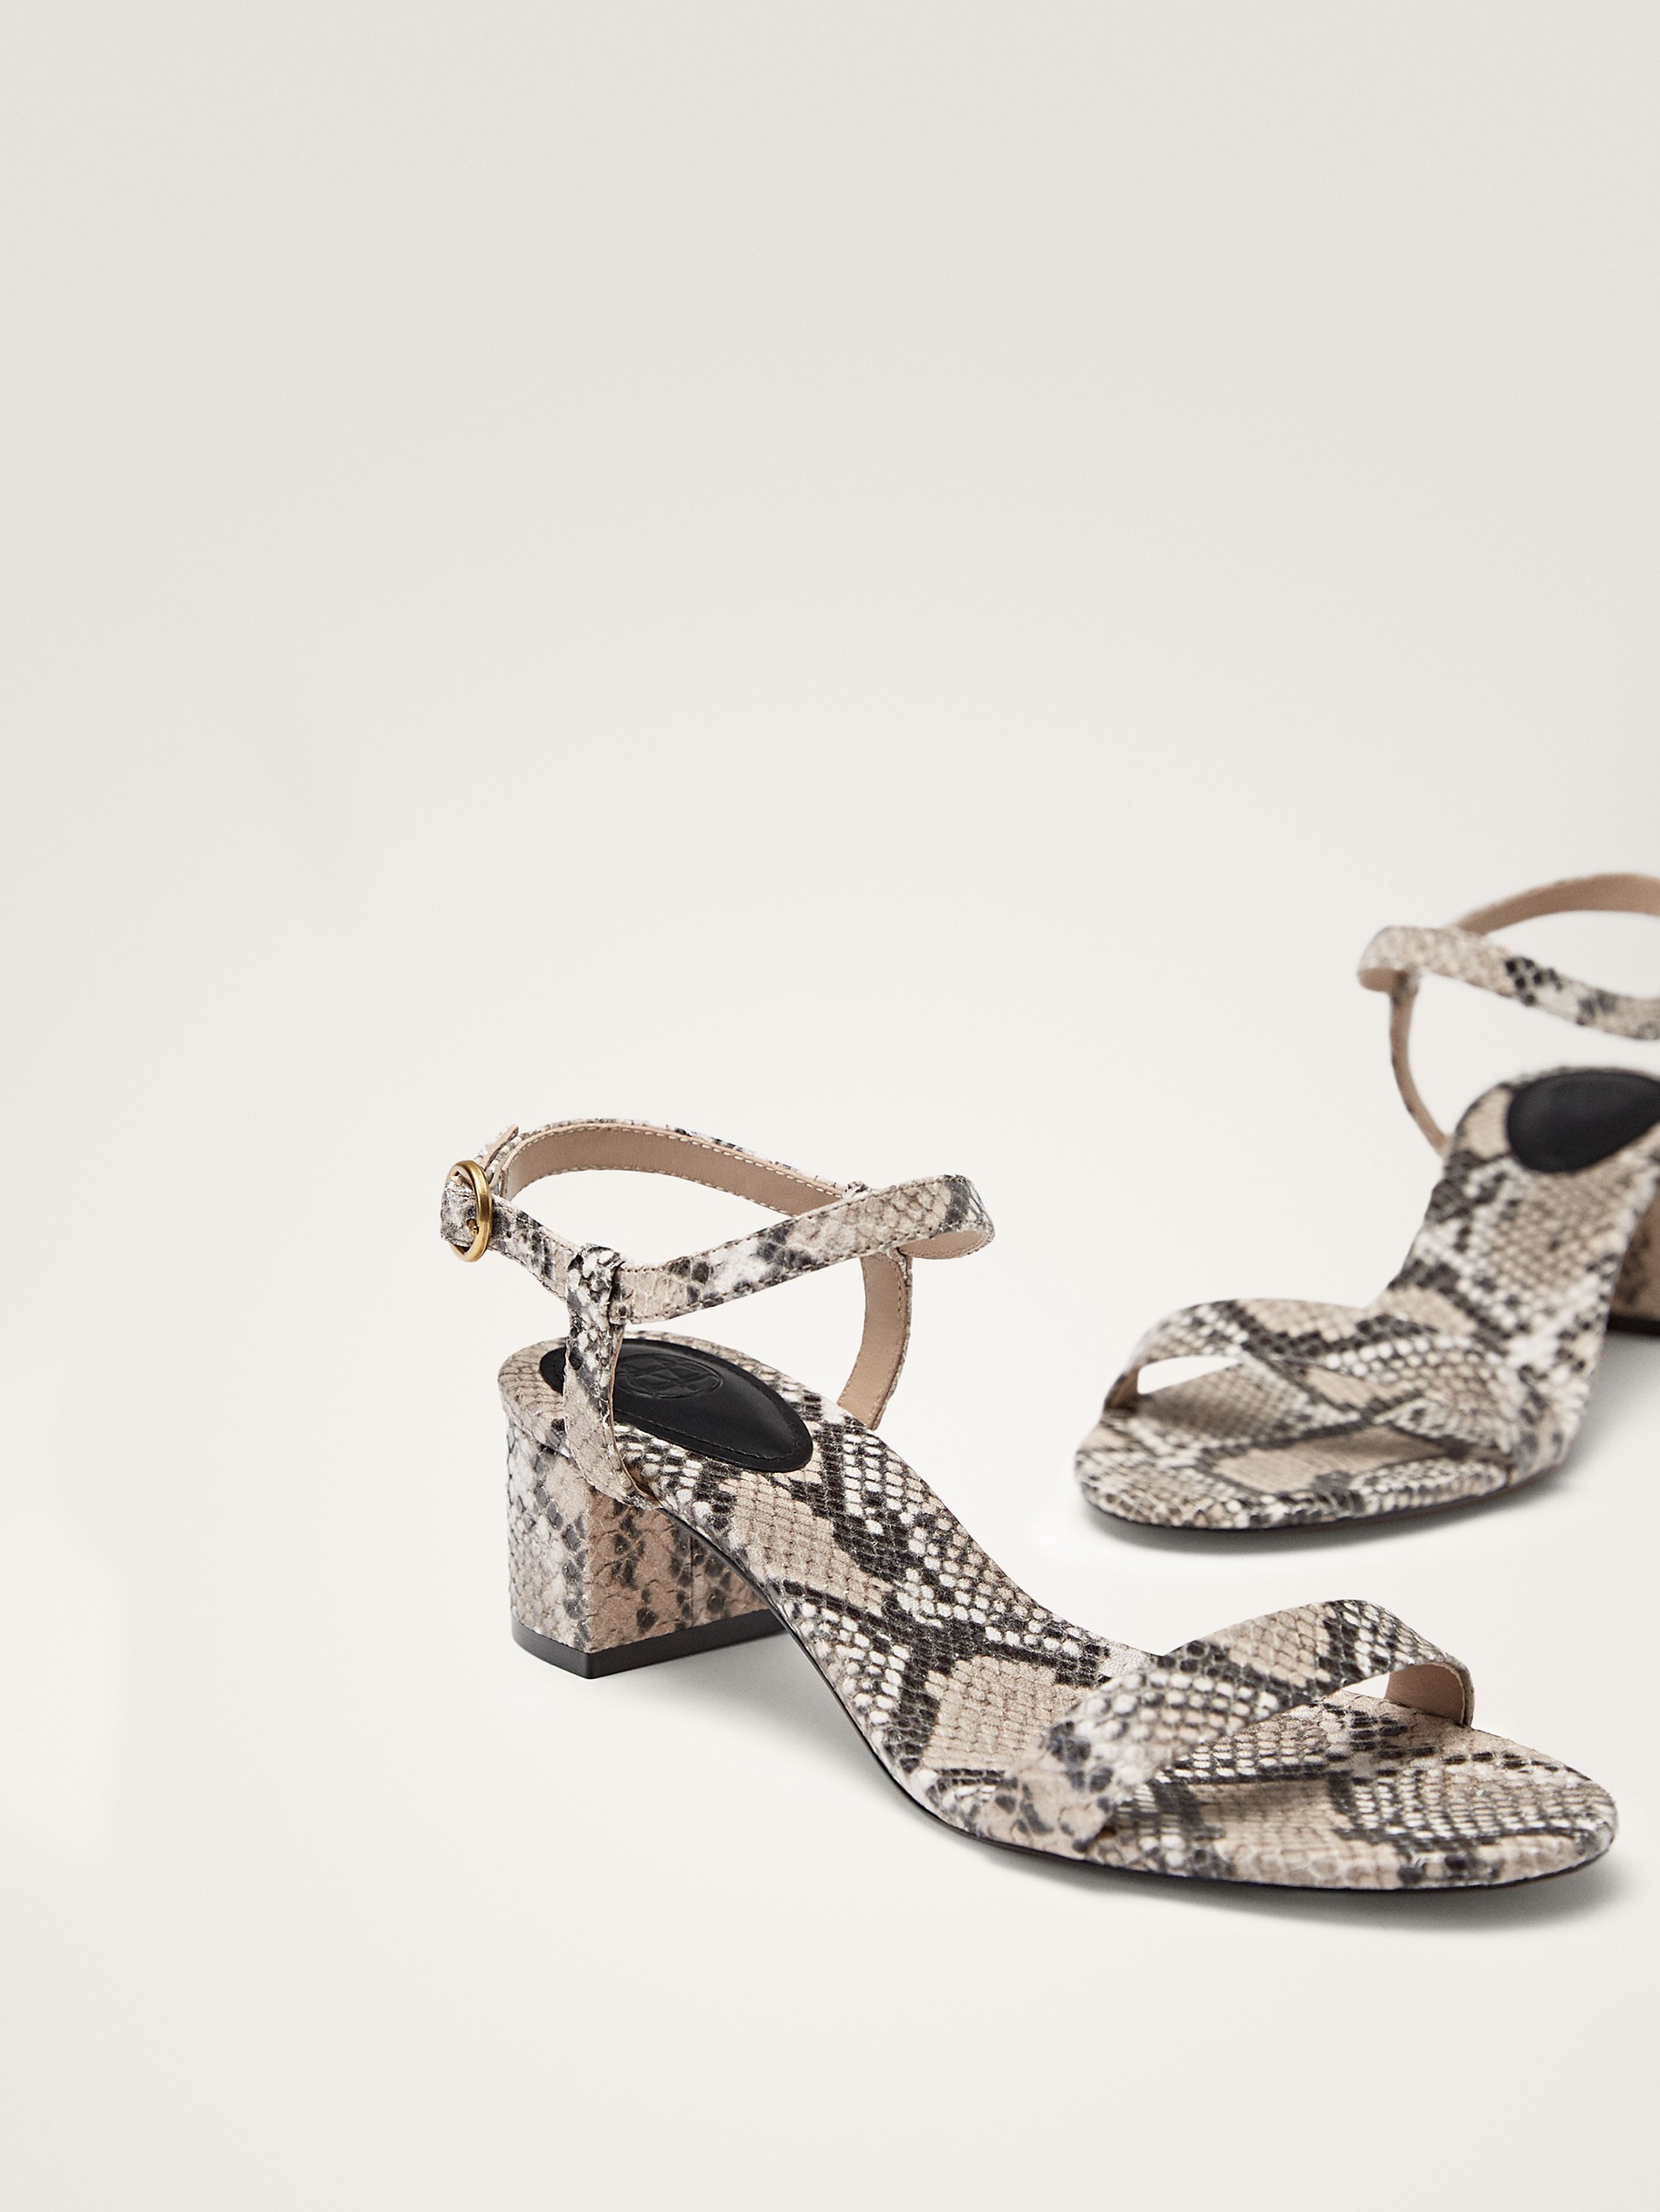 leopard print sandals block heel